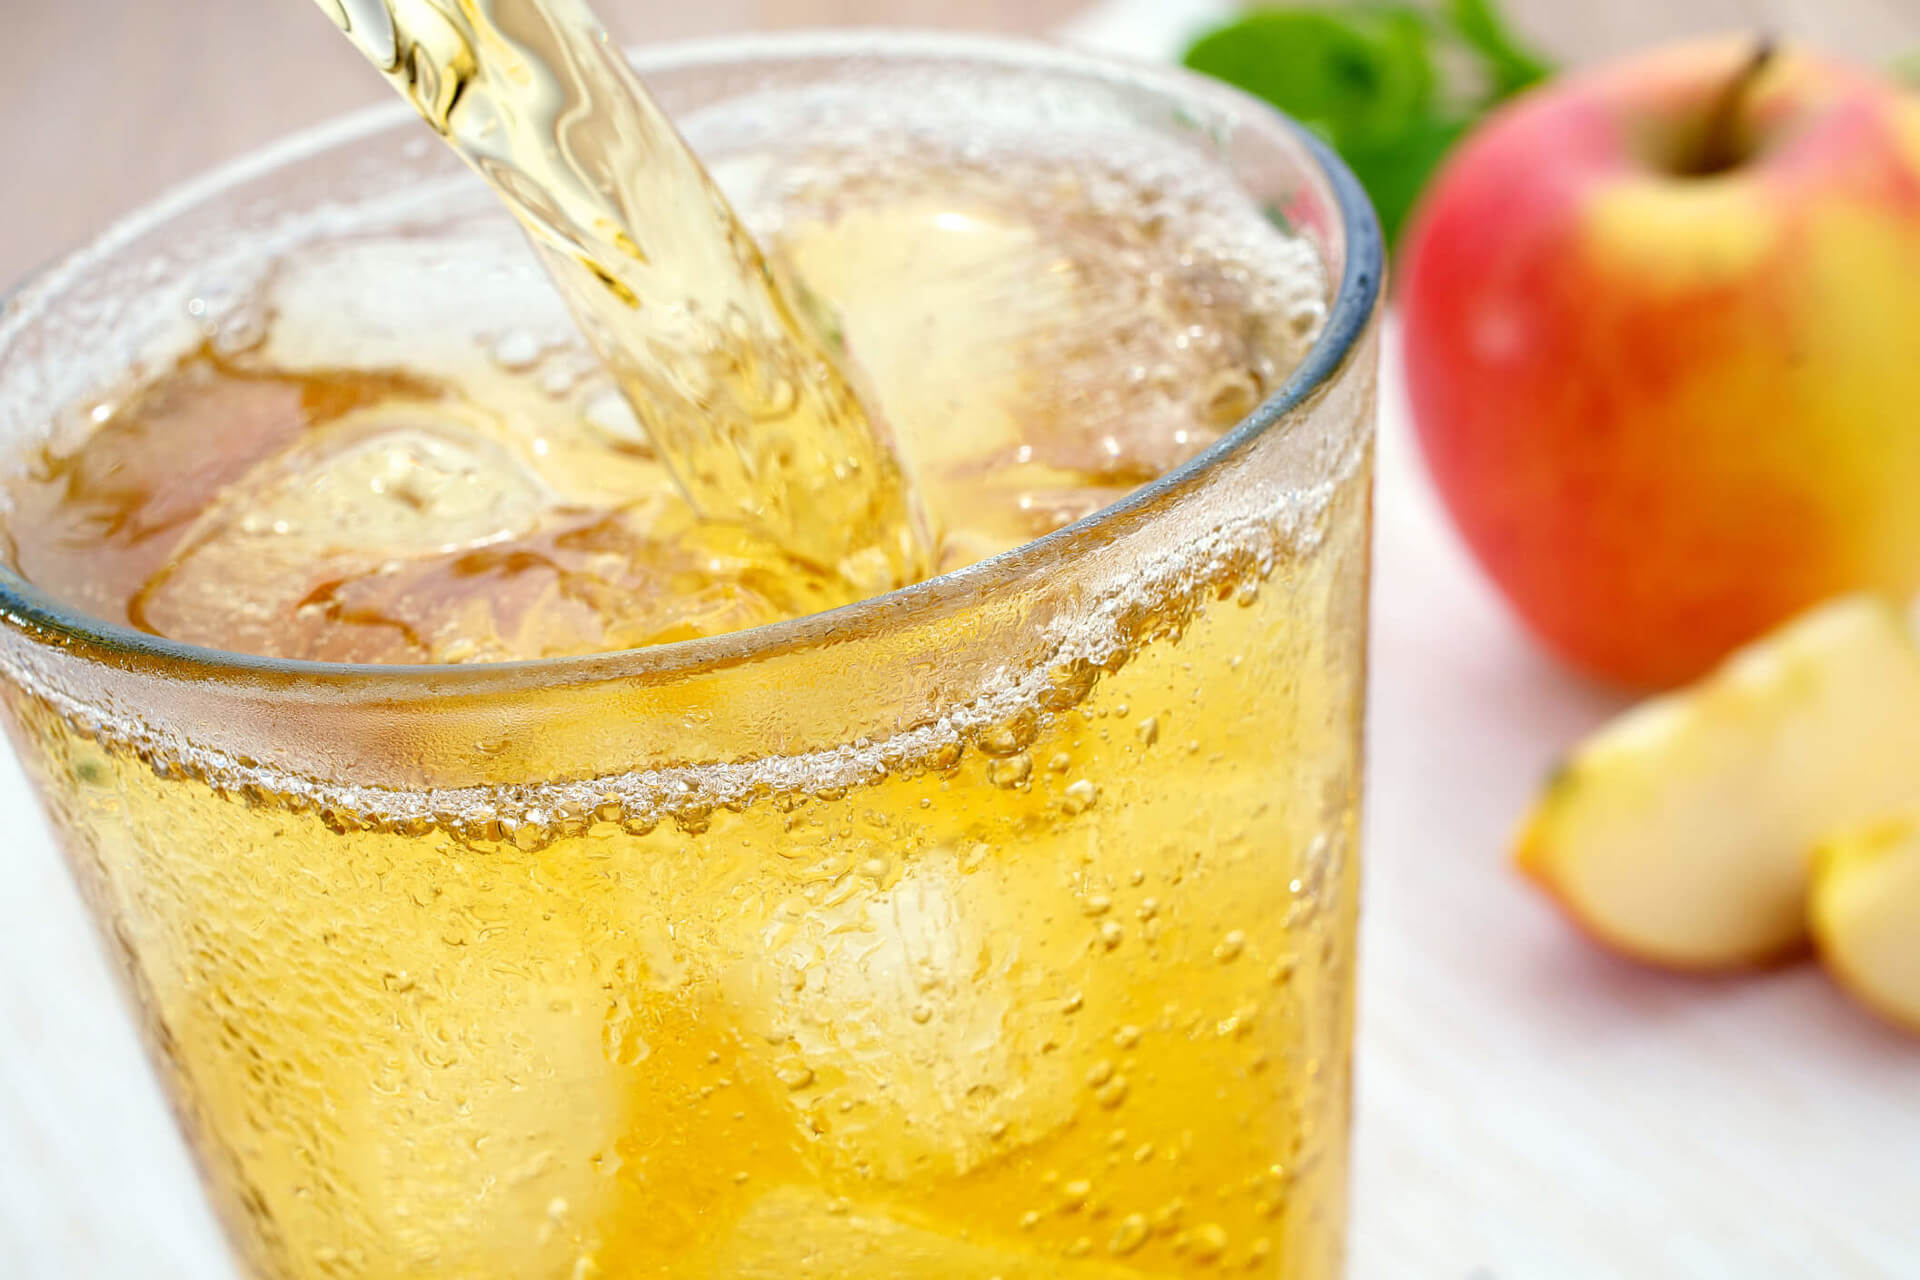 In ein bereits gefülltes, eisgekühltes Glas mit Eiswürfeln wird Apfelschorle eingegossen. Im Hintergrund unscharf ein Apfel und zwei Apfelschnitze.